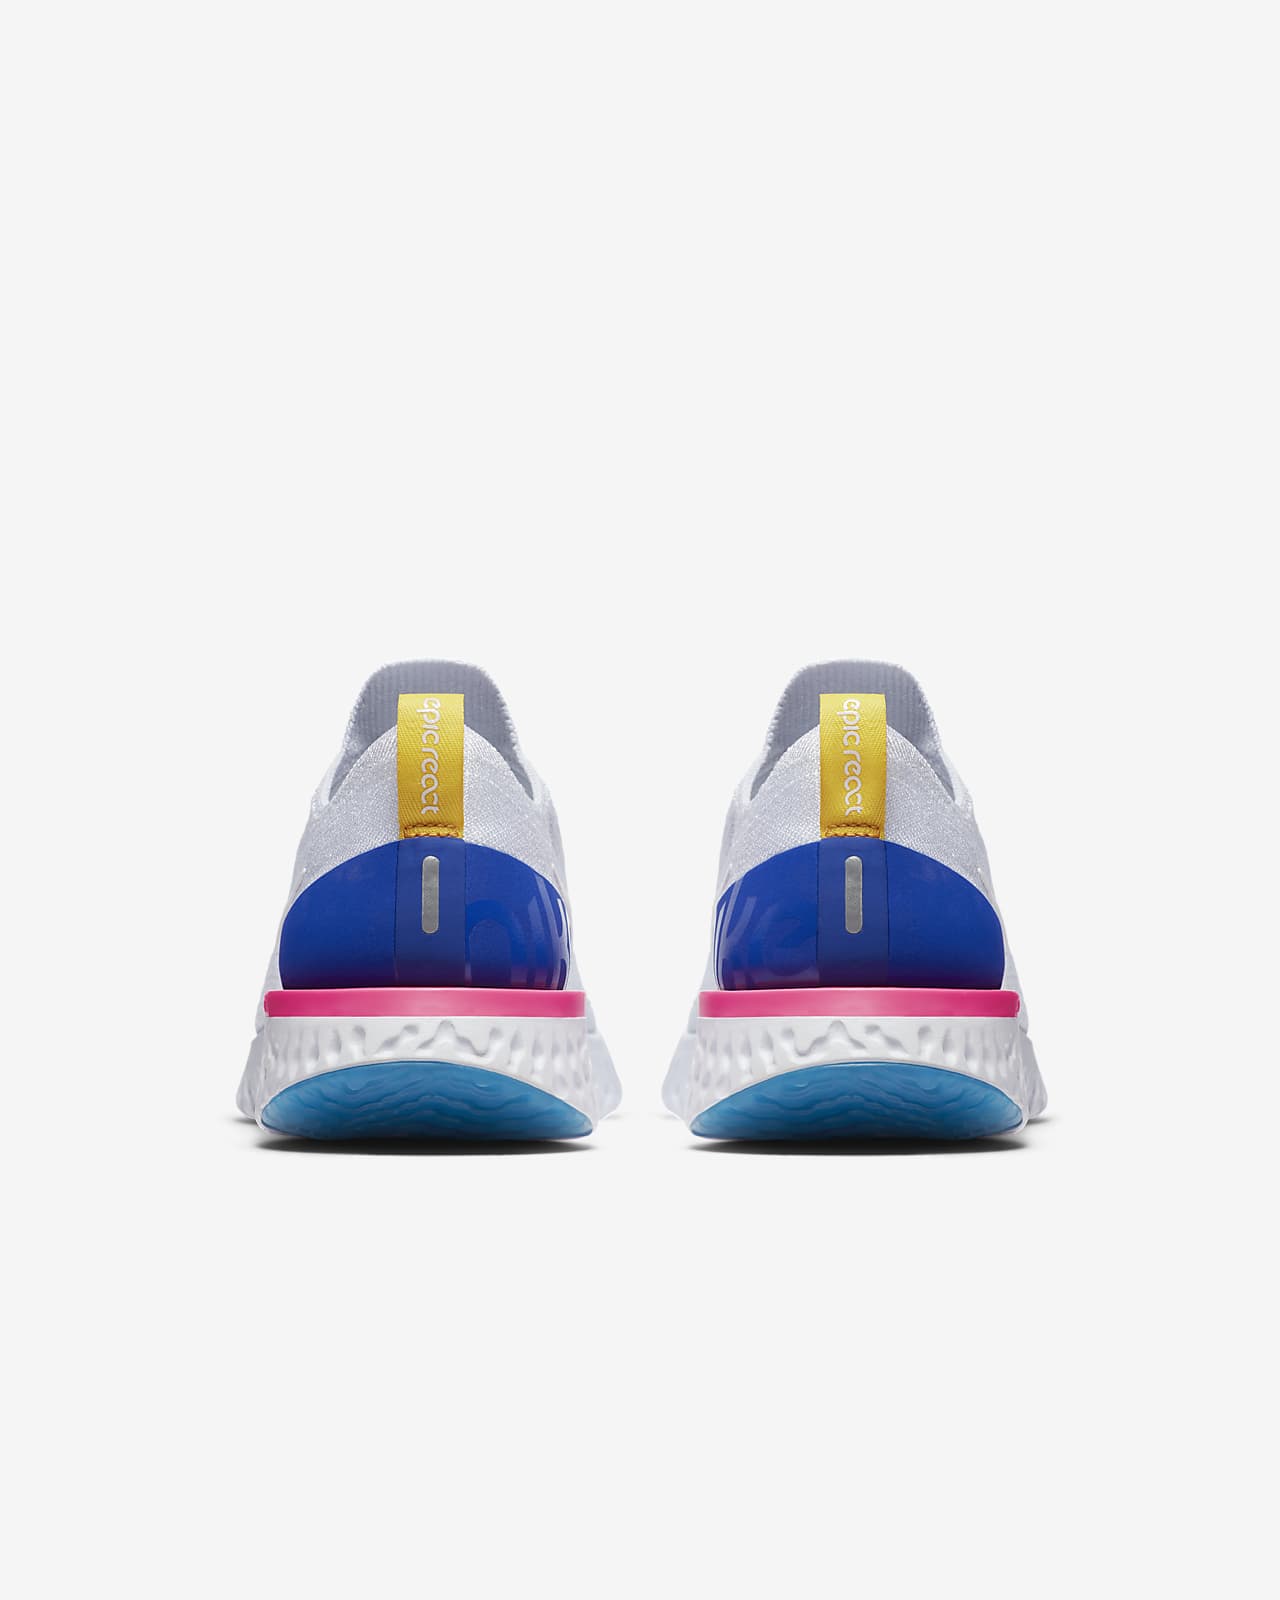 جوال الكاتيل Nike Epic React Flyknit Women's Running Shoe جوال الكاتيل